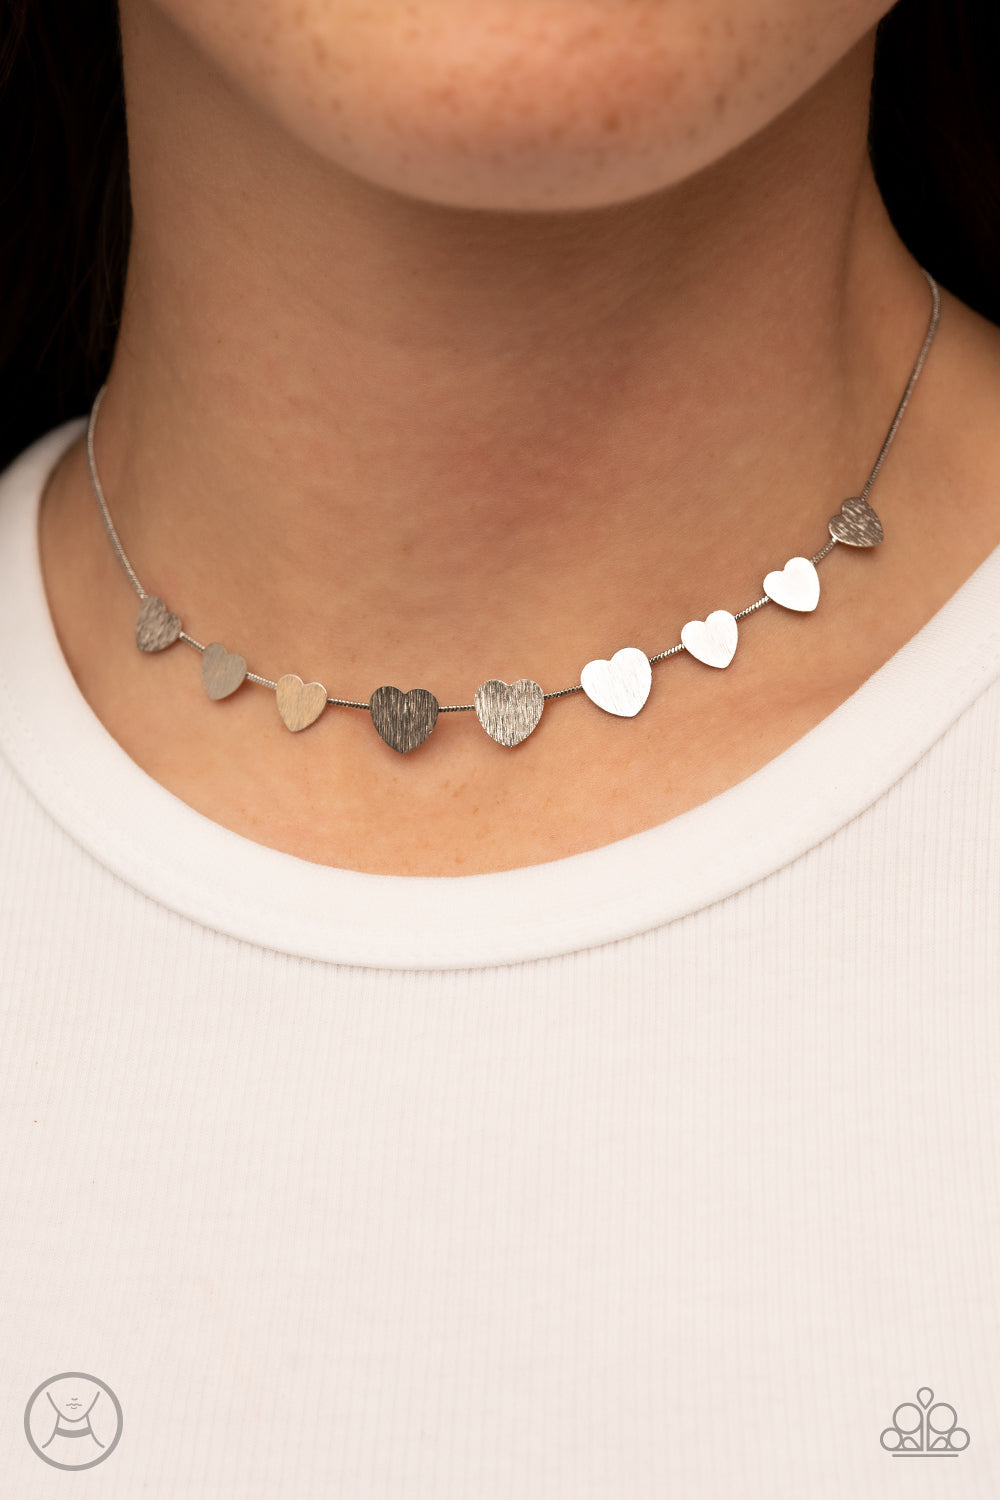  LEXODY Dainty Necklace Tiny Heart Pendant Choker Small